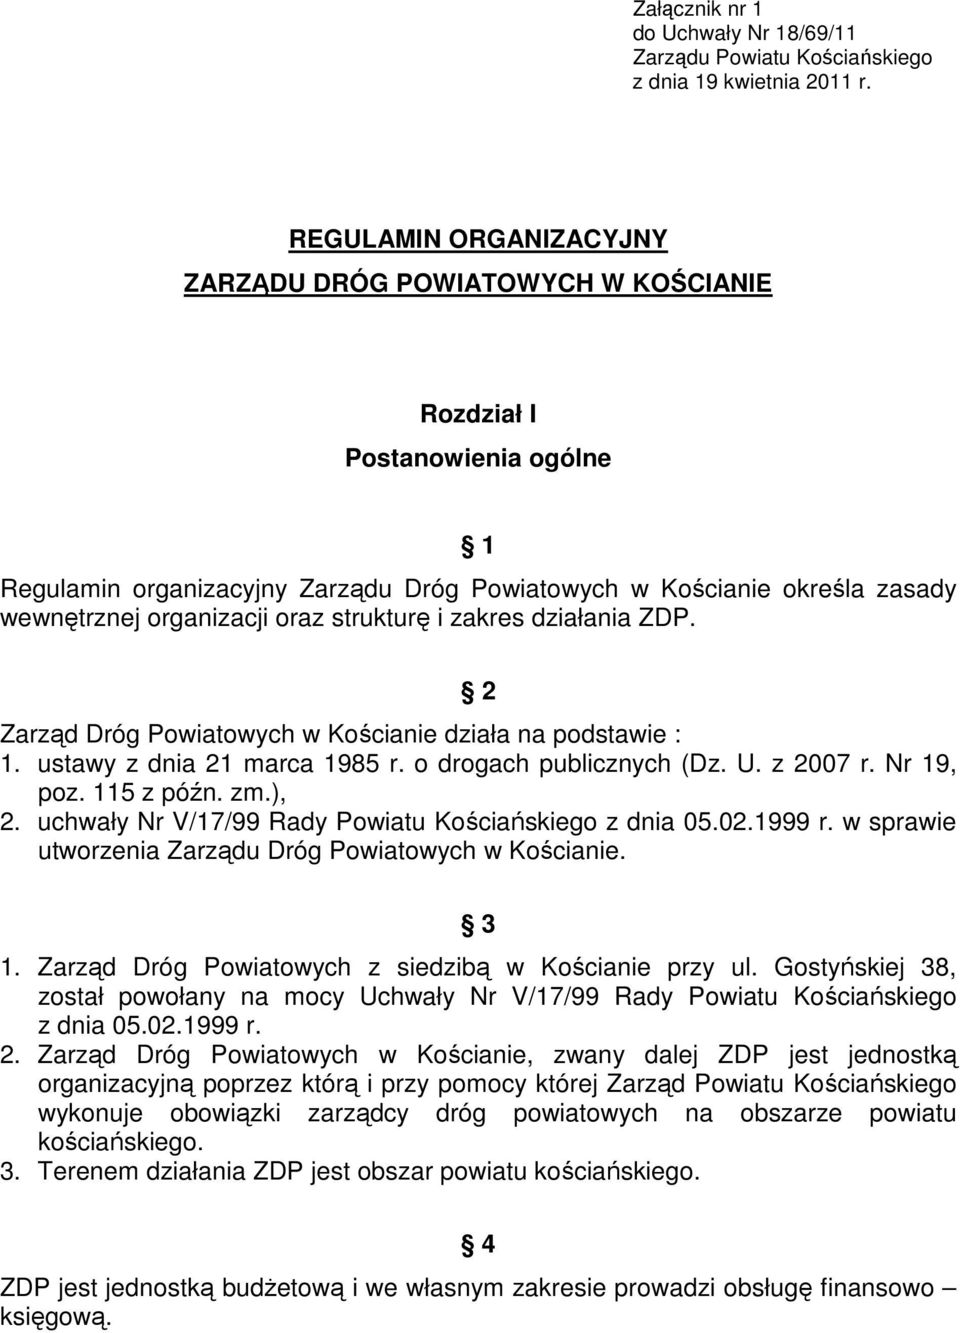 strukturę i zakres działania ZDP. 2 Zarząd Dróg Powiatowych w Kościanie działa na podstawie : 1. ustawy z dnia 21 marca 1985 r. o drogach publicznych (Dz. U. z 2007 r. Nr 19, poz. 115 z późn. zm.), 2.